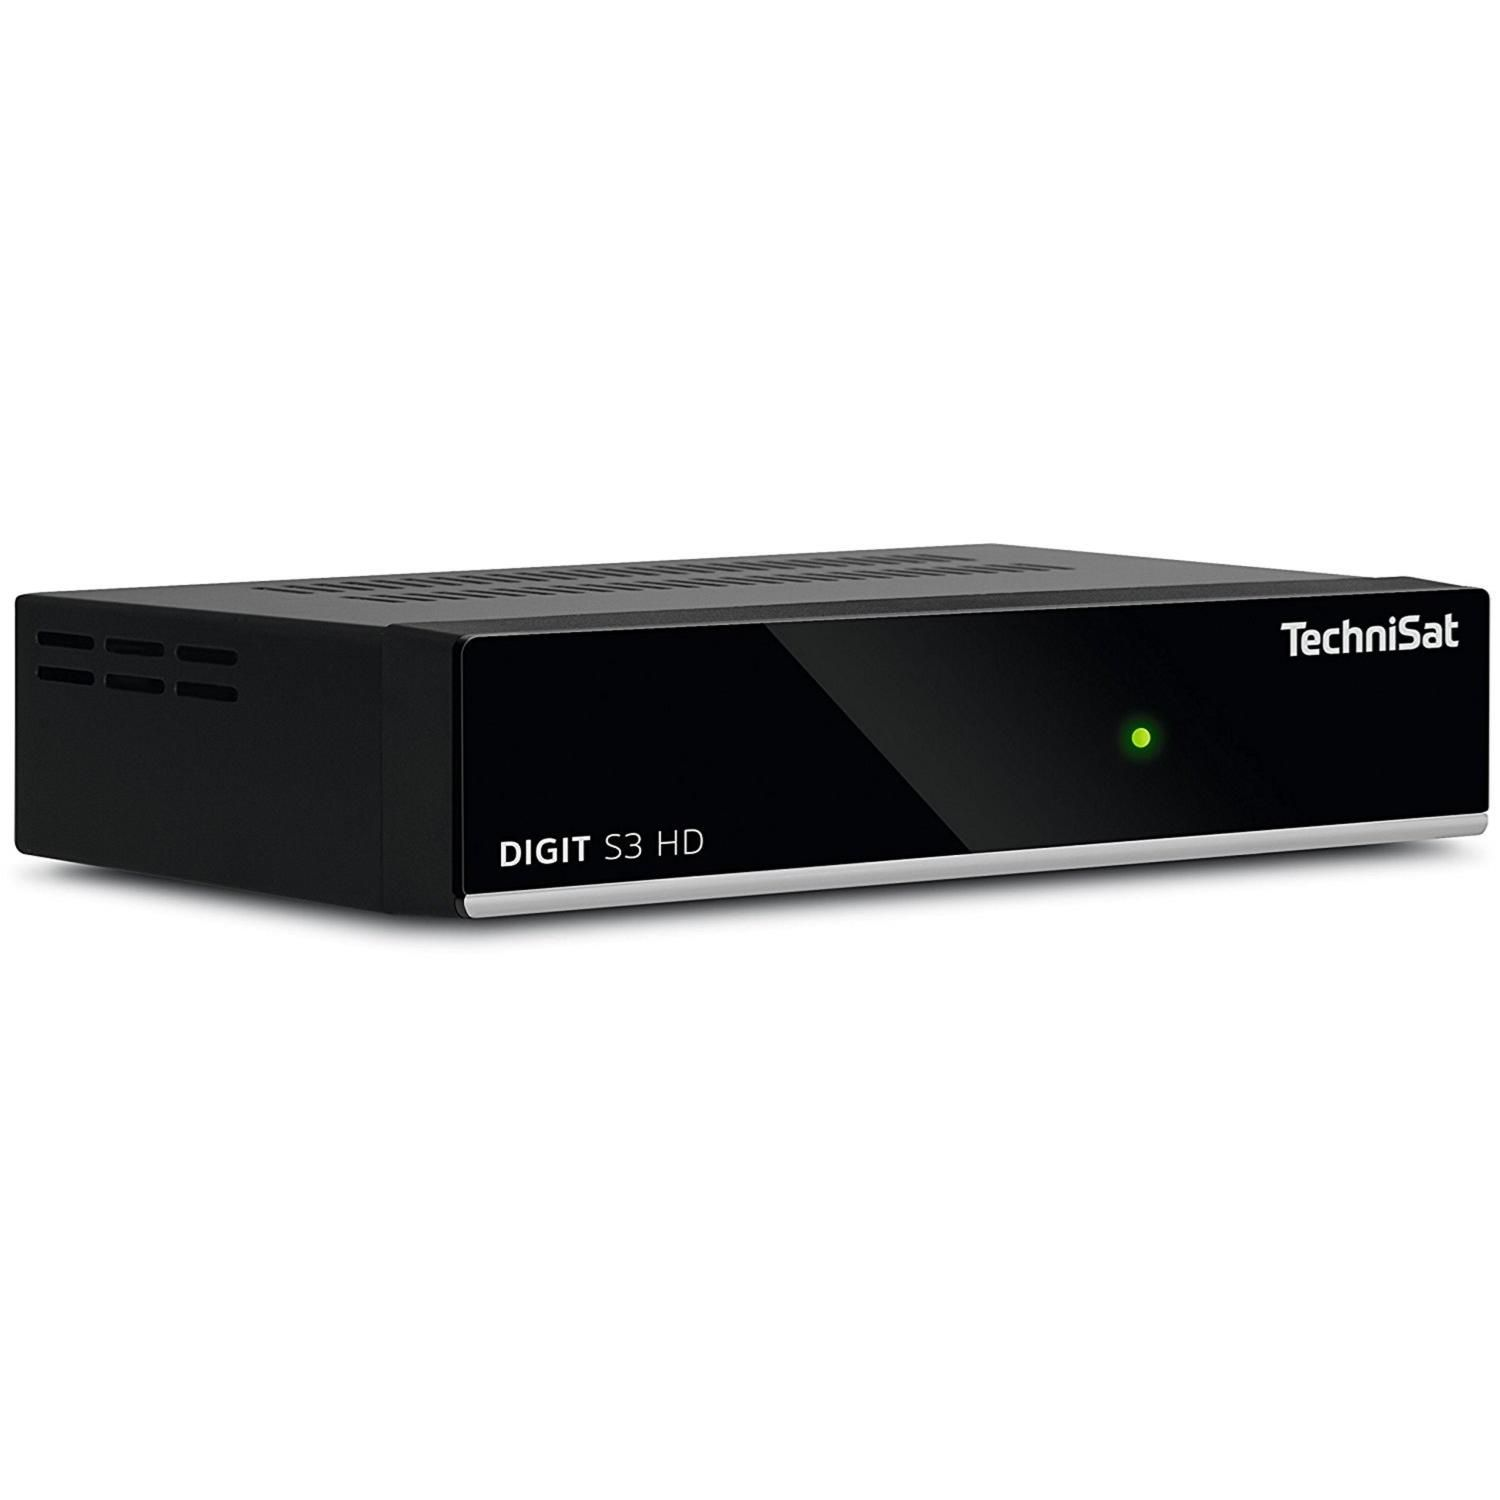 SAT-Receiver HD schwarz) (HDTV, DVB-S, S3 V2 DVB-S2, TECHNISAT Digit